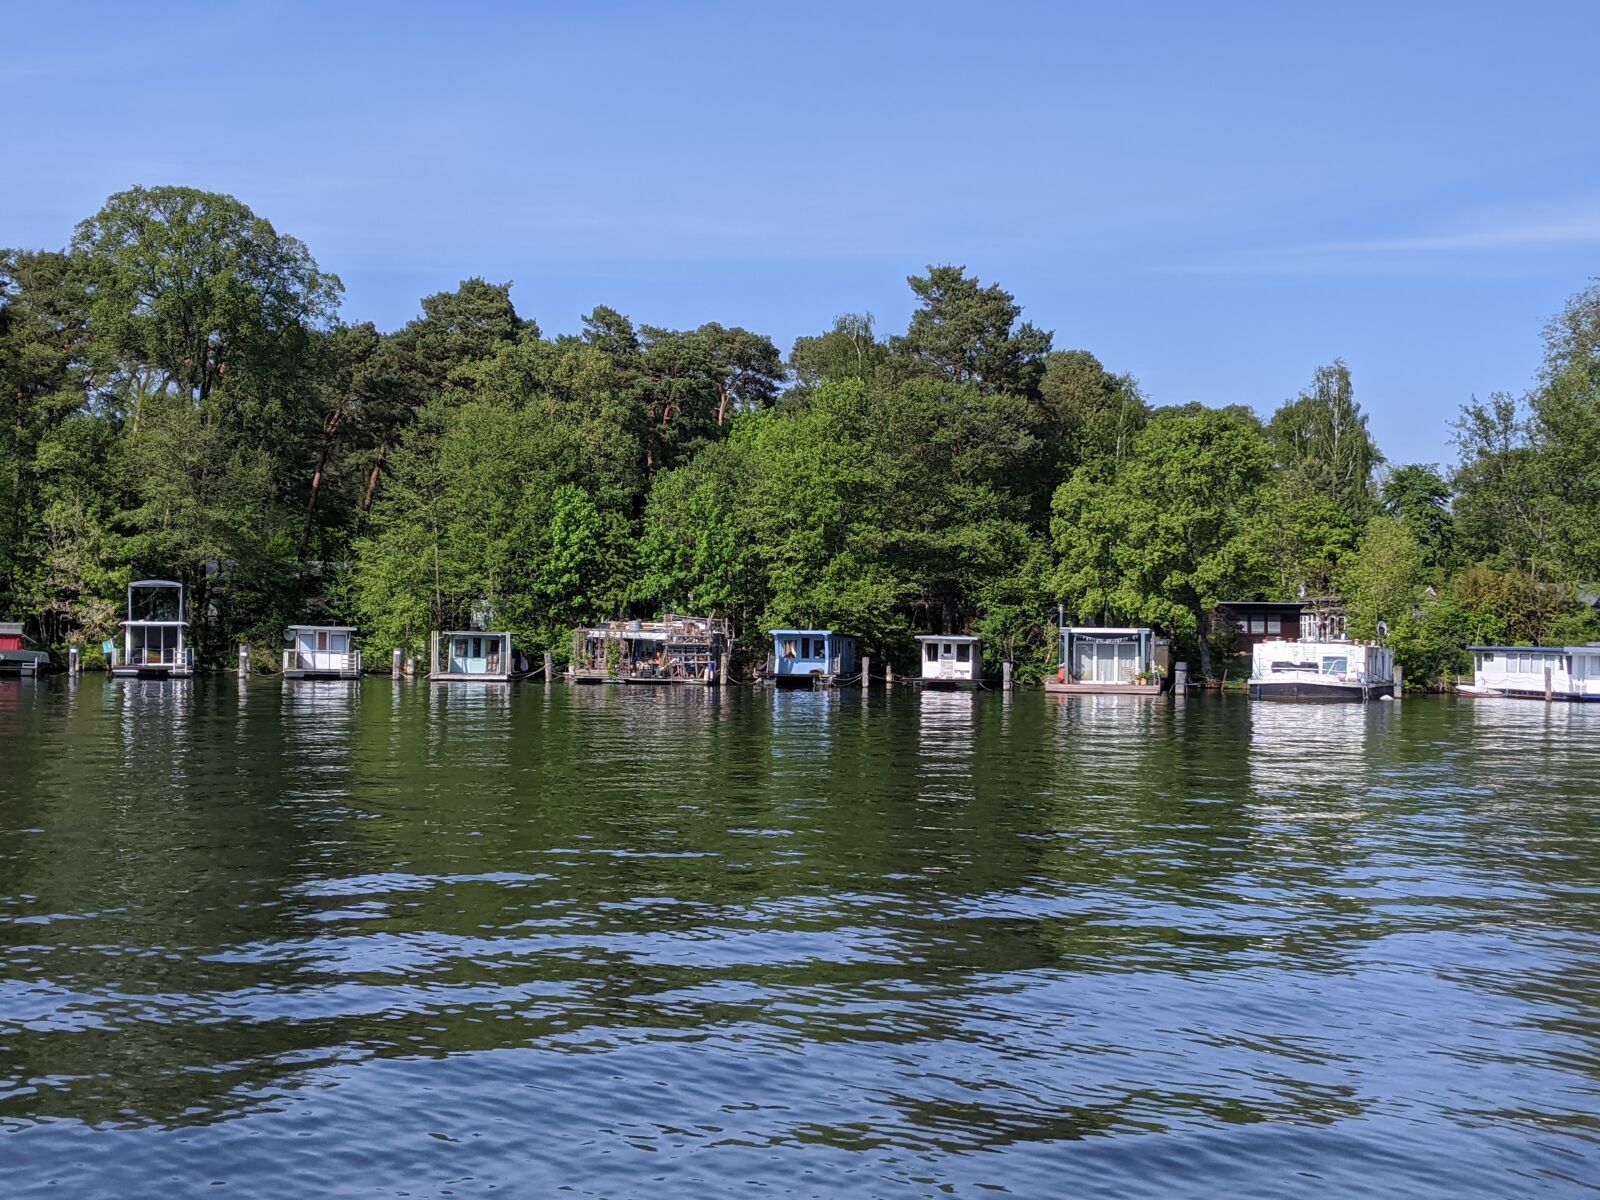 Google Pixel 3a sample photo. Lake, boats, houseboat photography